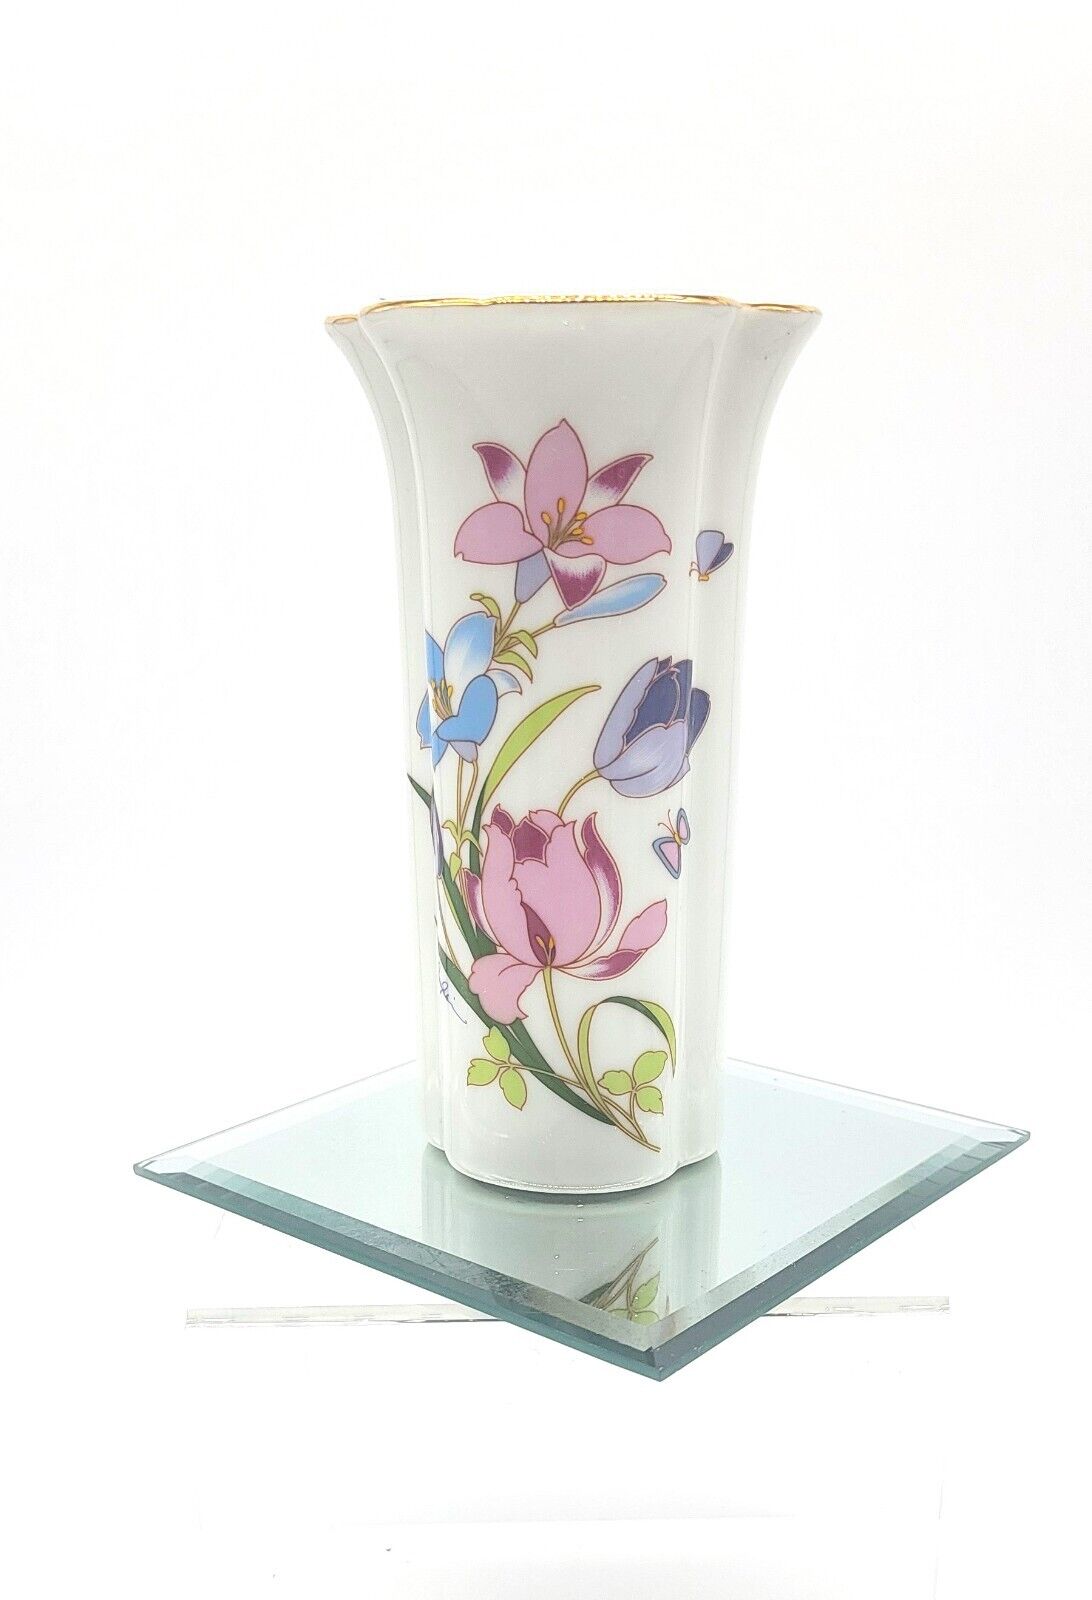 Le-go Fine Quality Porcelain Floral Vase Butterflies Tulips Lilies Japan Cottage